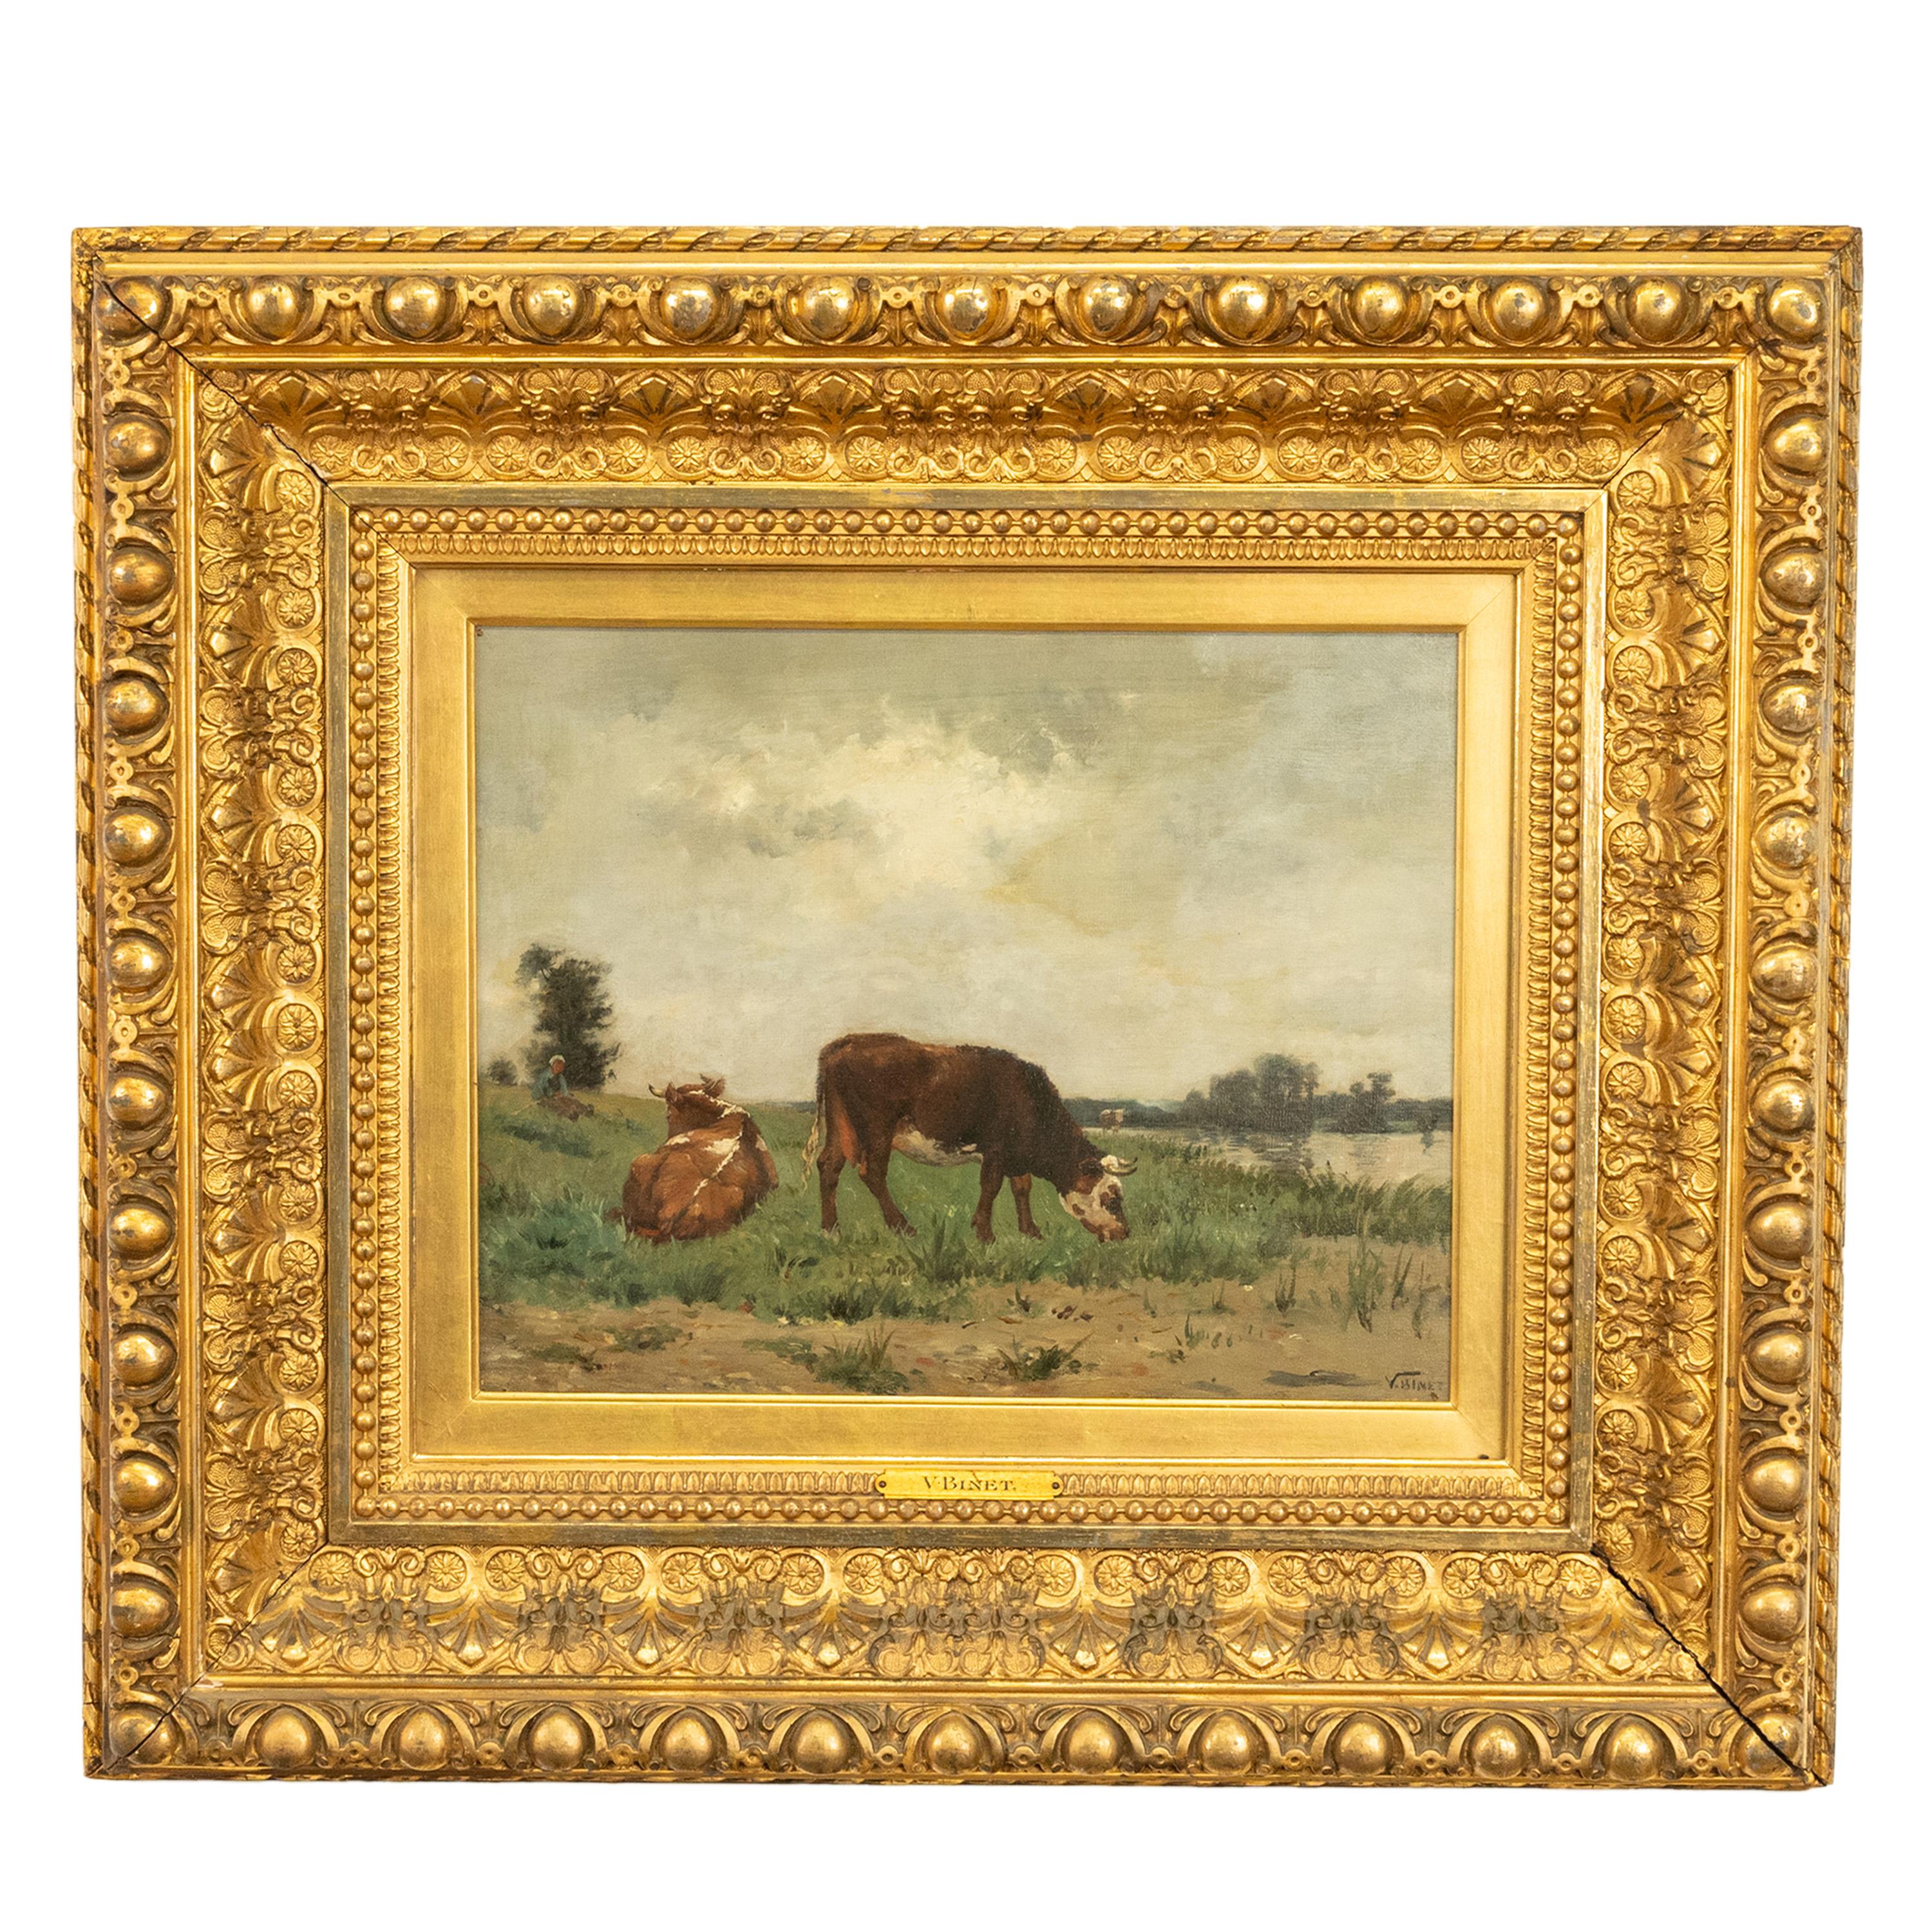 VICTOR JEAN BAPTISTE BARTHELEMY BINET 
Français, 1849-1924
Ce très beau tableau précoce, datant de 1875, peint par Binet, définit parfaitement la période tardive de l'école de Barbizon. Représentant un couple de vaches dans un paysage bucolique,